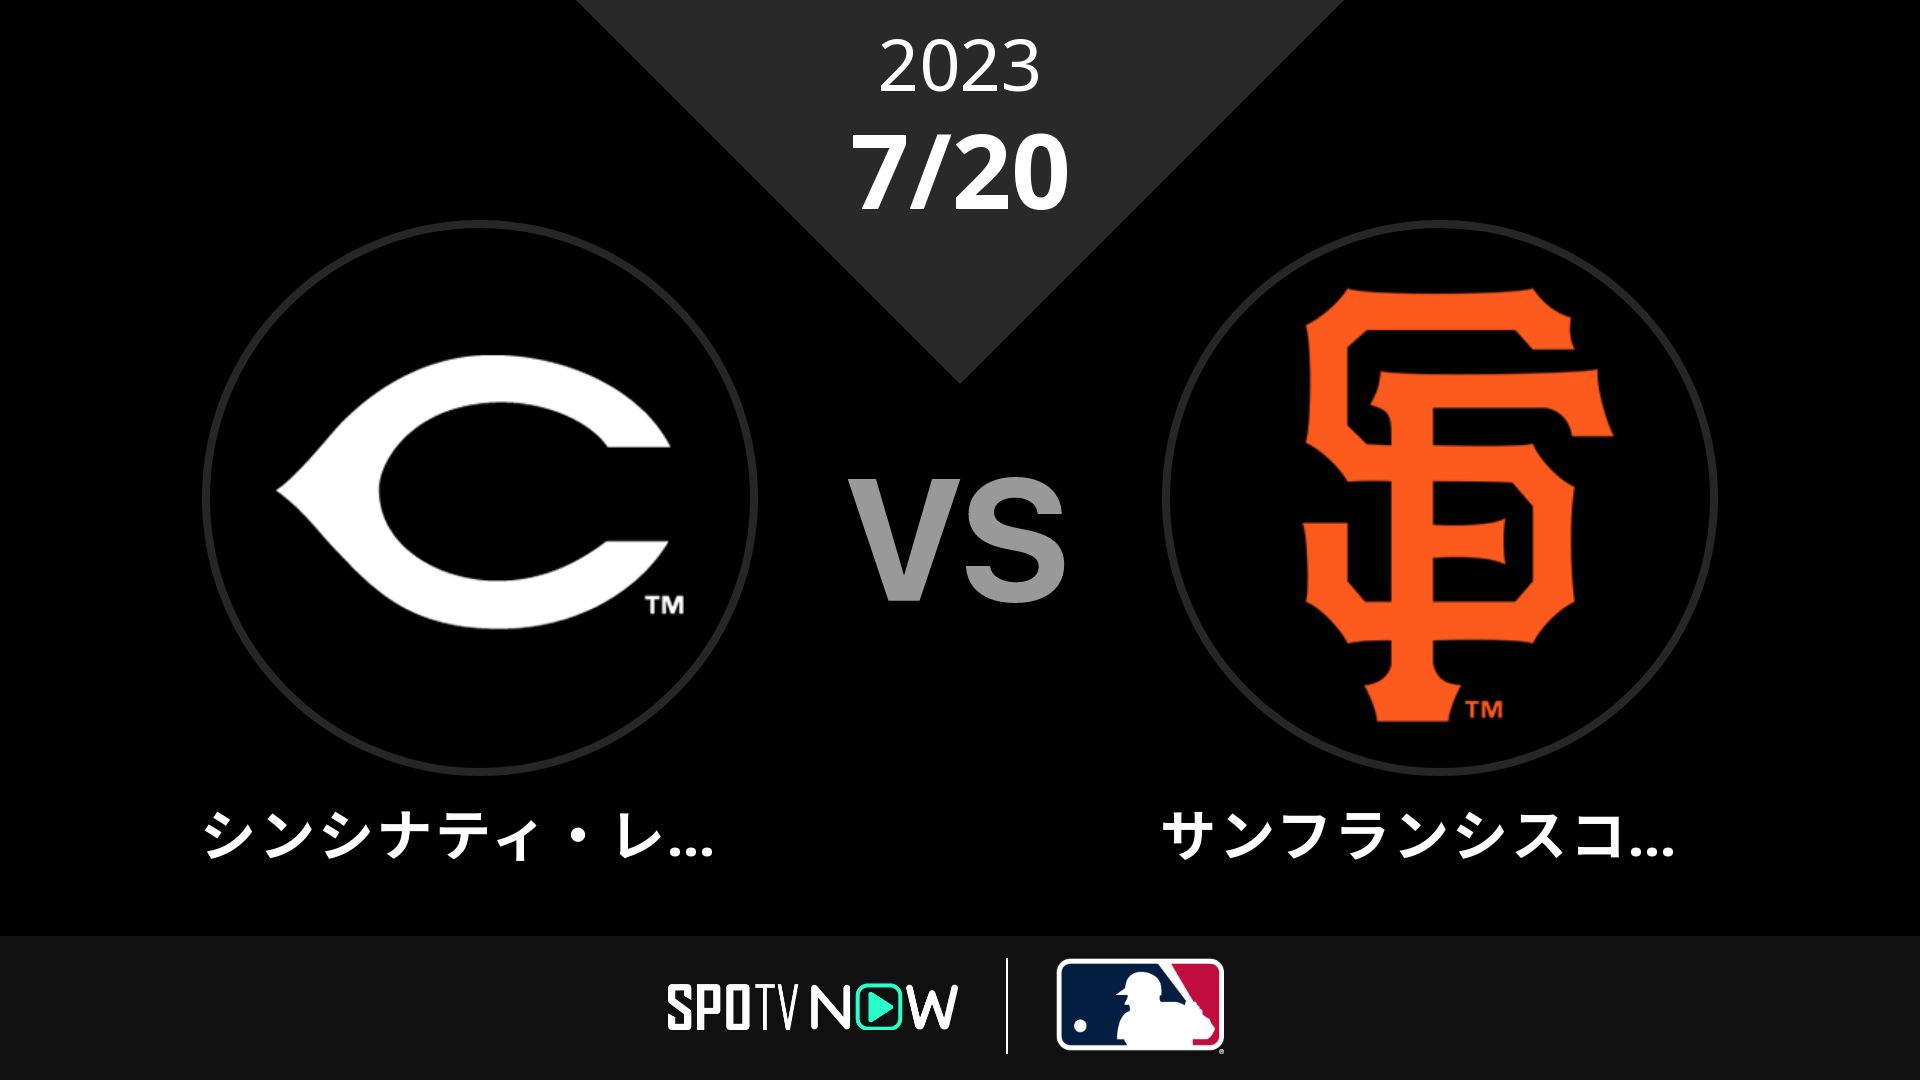 2023/7/20 レッズ vs ジャイアンツ [MLB]